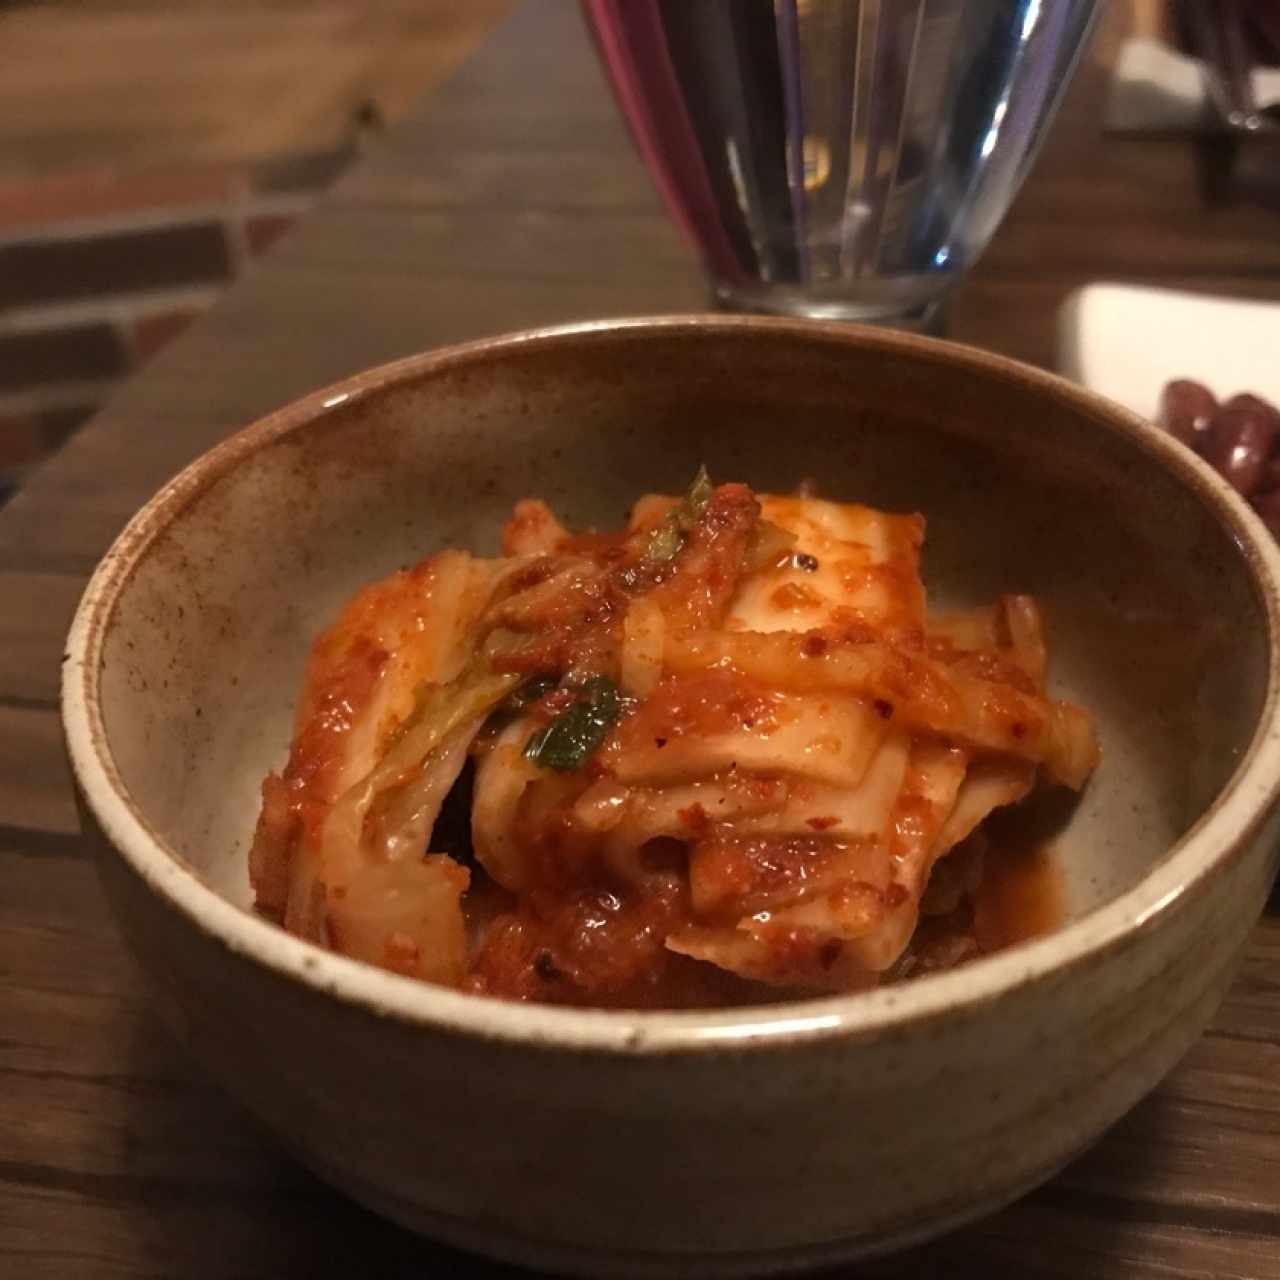 entrada (kimchi) deliciosooo